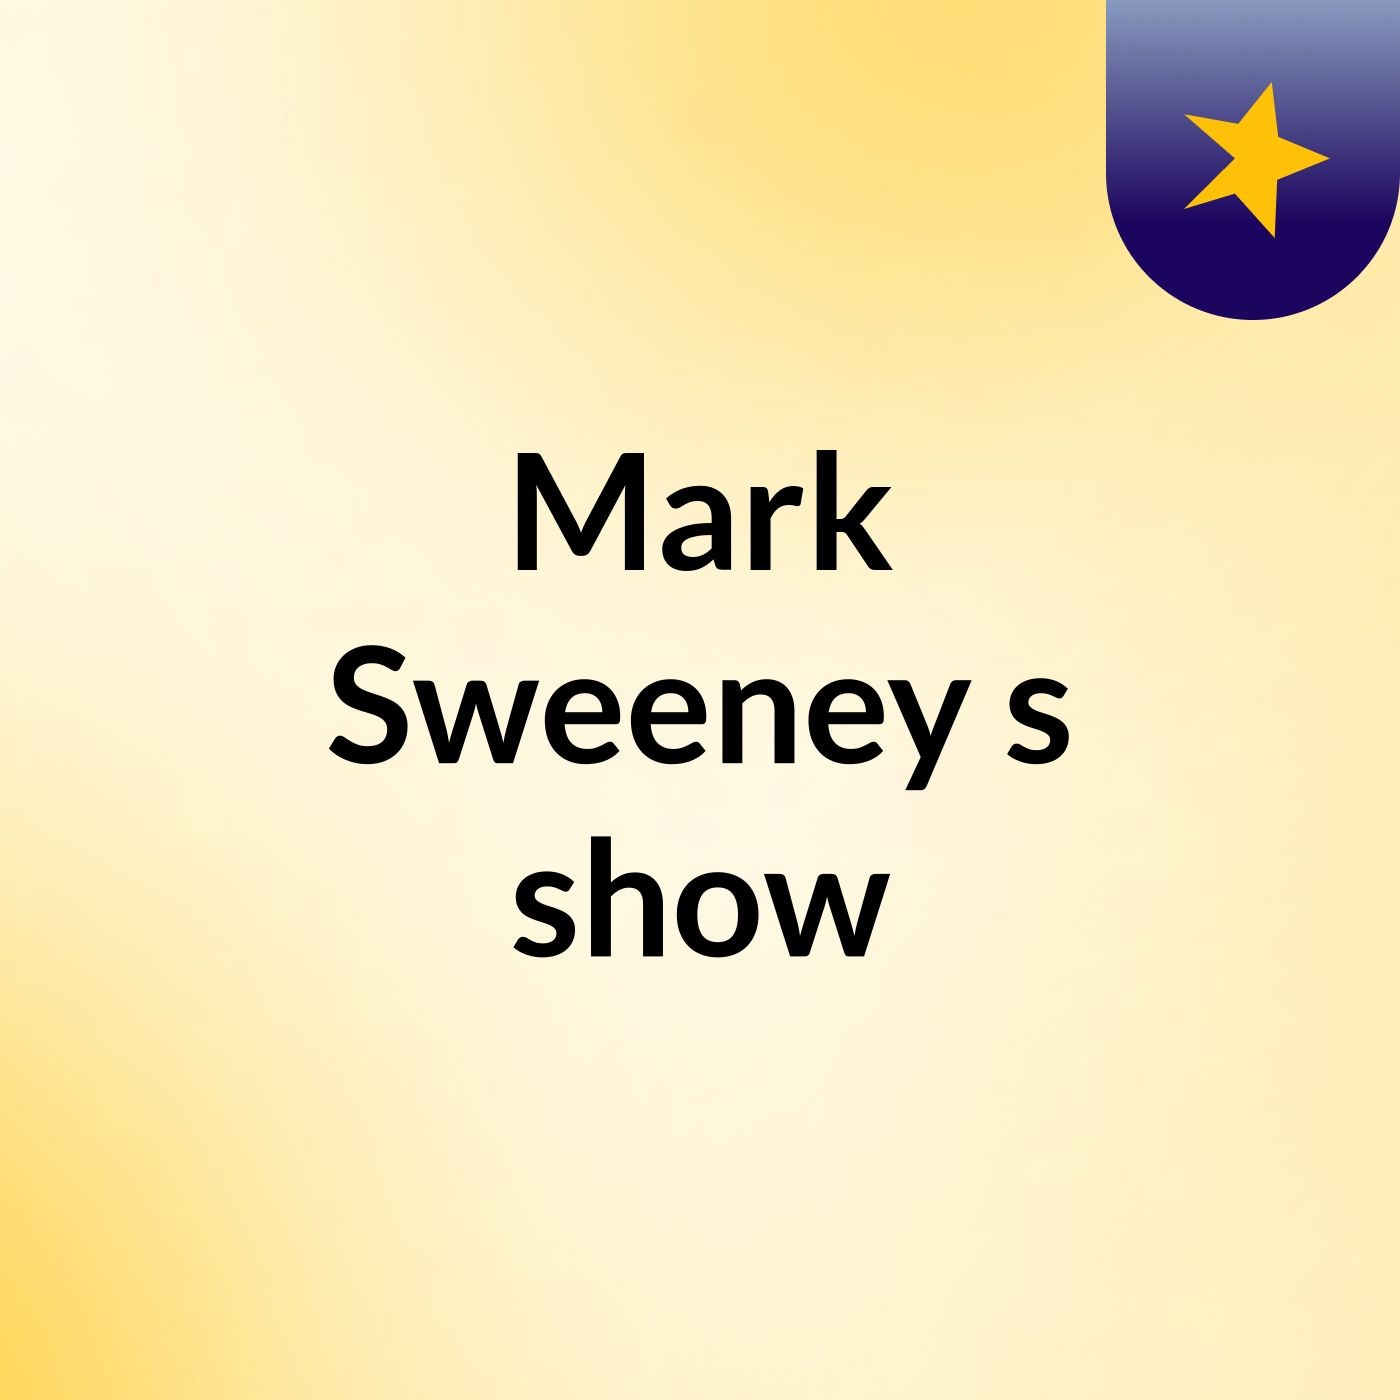 Episode 4 - Mark Sweeney's show